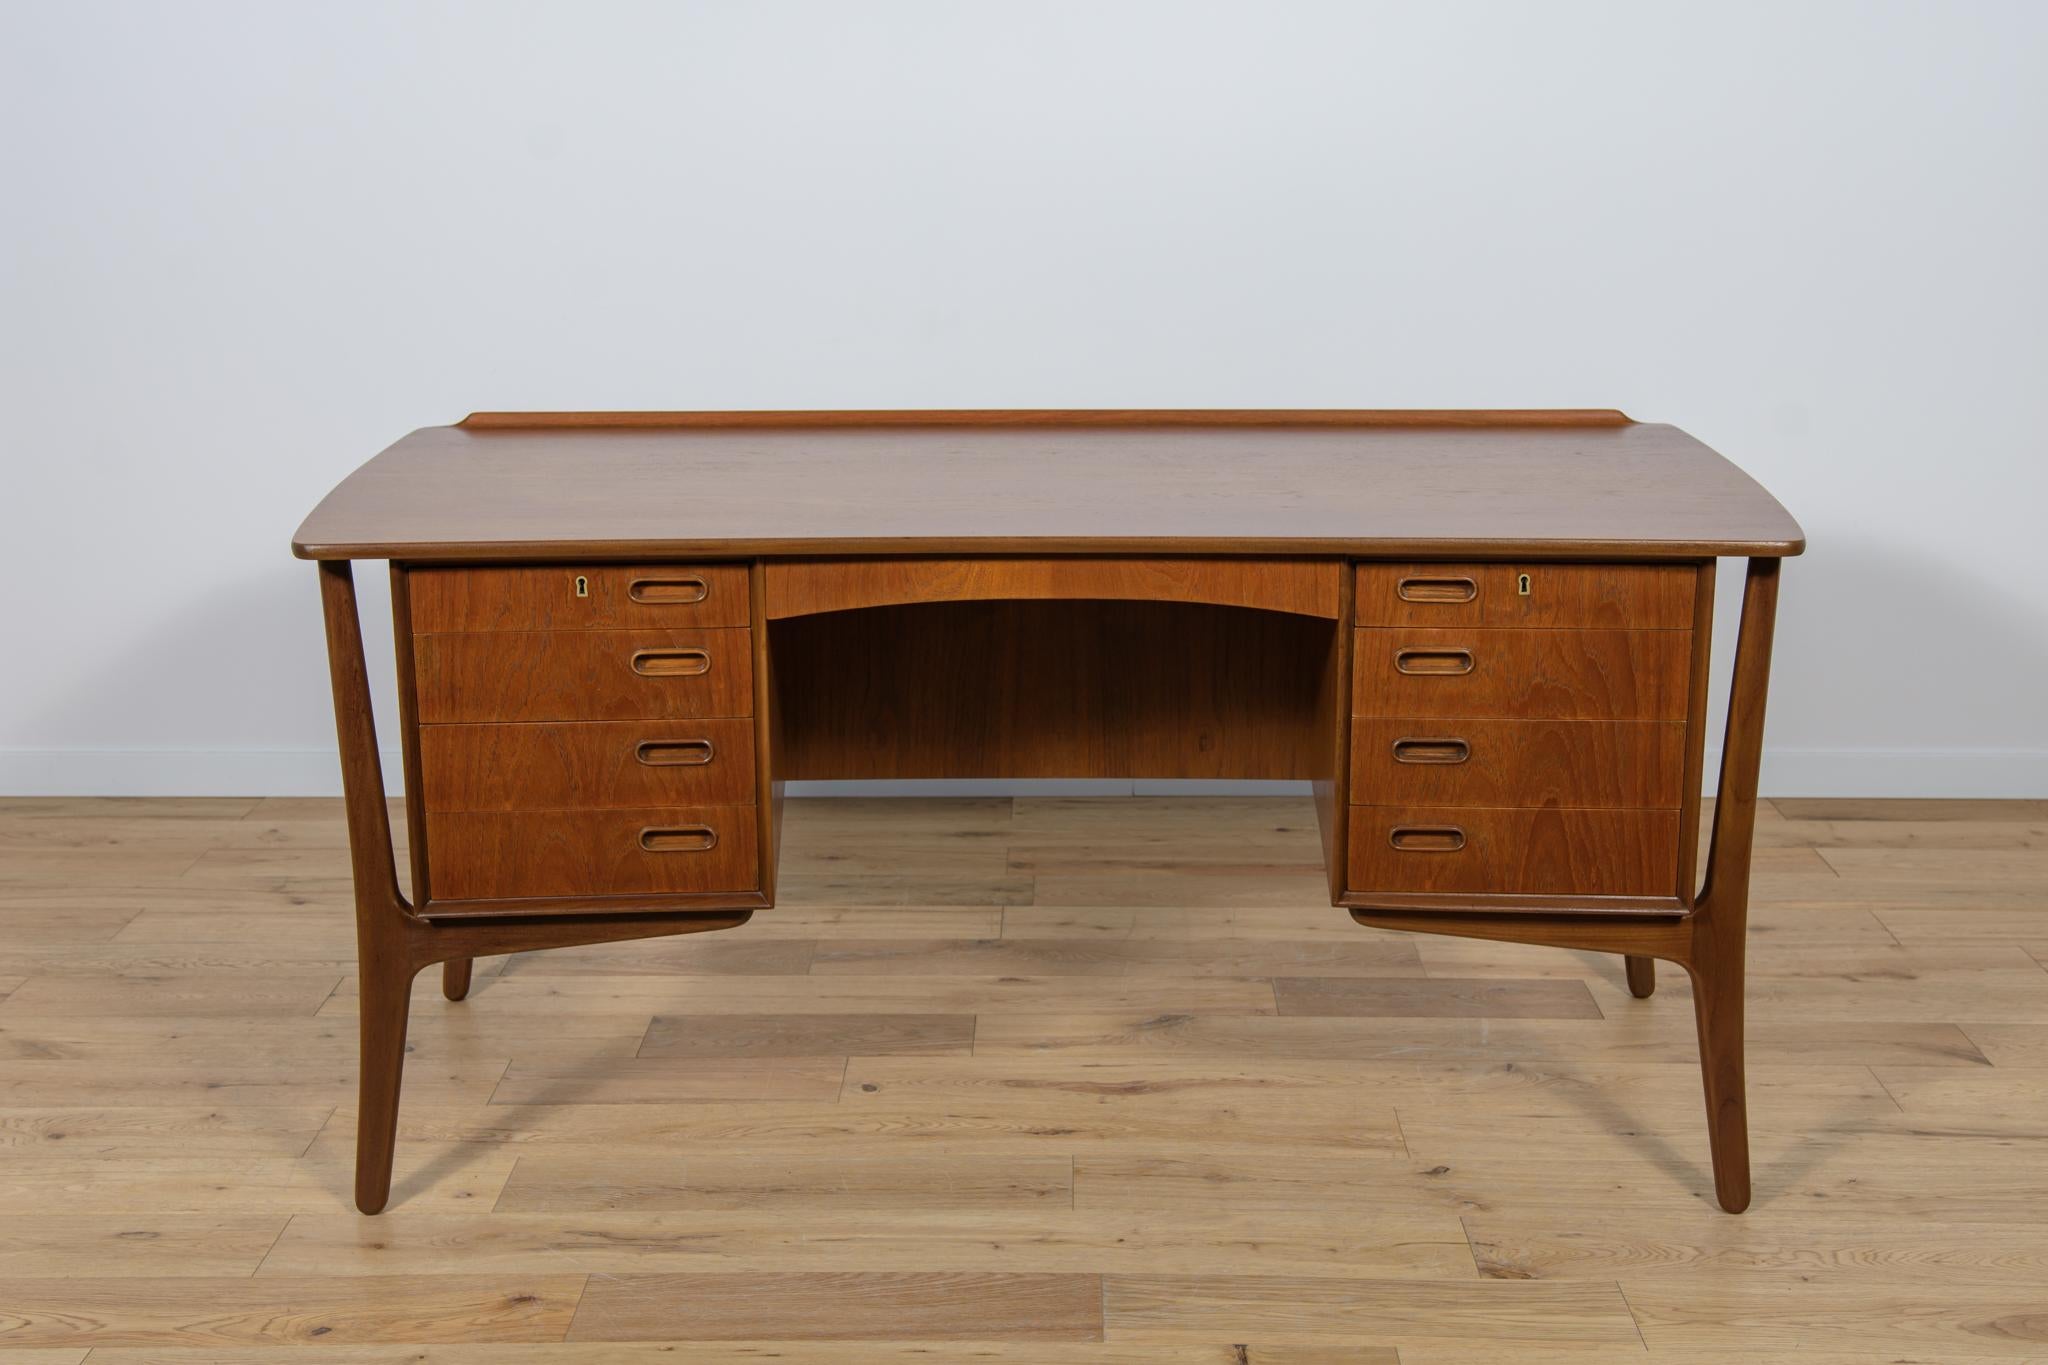 Ce bureau a été conçu par Svend Åge Madsen et fabriqué par h.p. Hansen au Danemark dans les années 1960. C'est un bon exemple de matériaux et de fabrication de haute qualité. Il s'agit d'un bureau en teck avec huit tiroirs, une étagère ouverte et